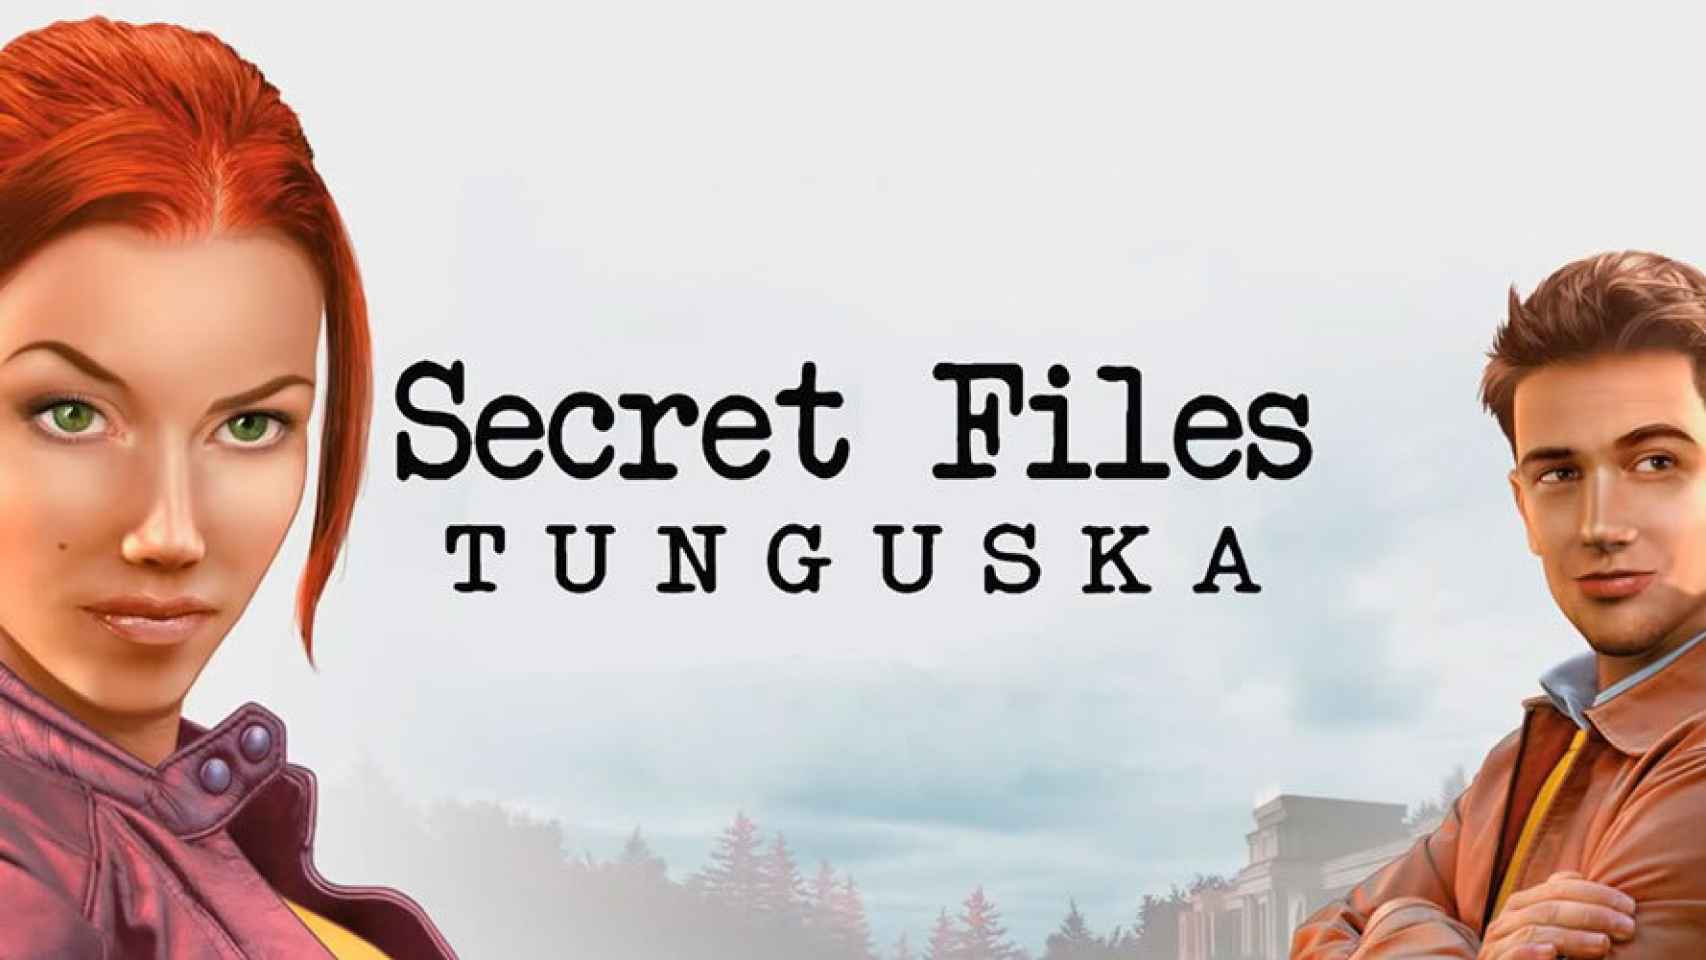 Secret Files: Tunguska, la aventura gráfica de misterio completamente en español